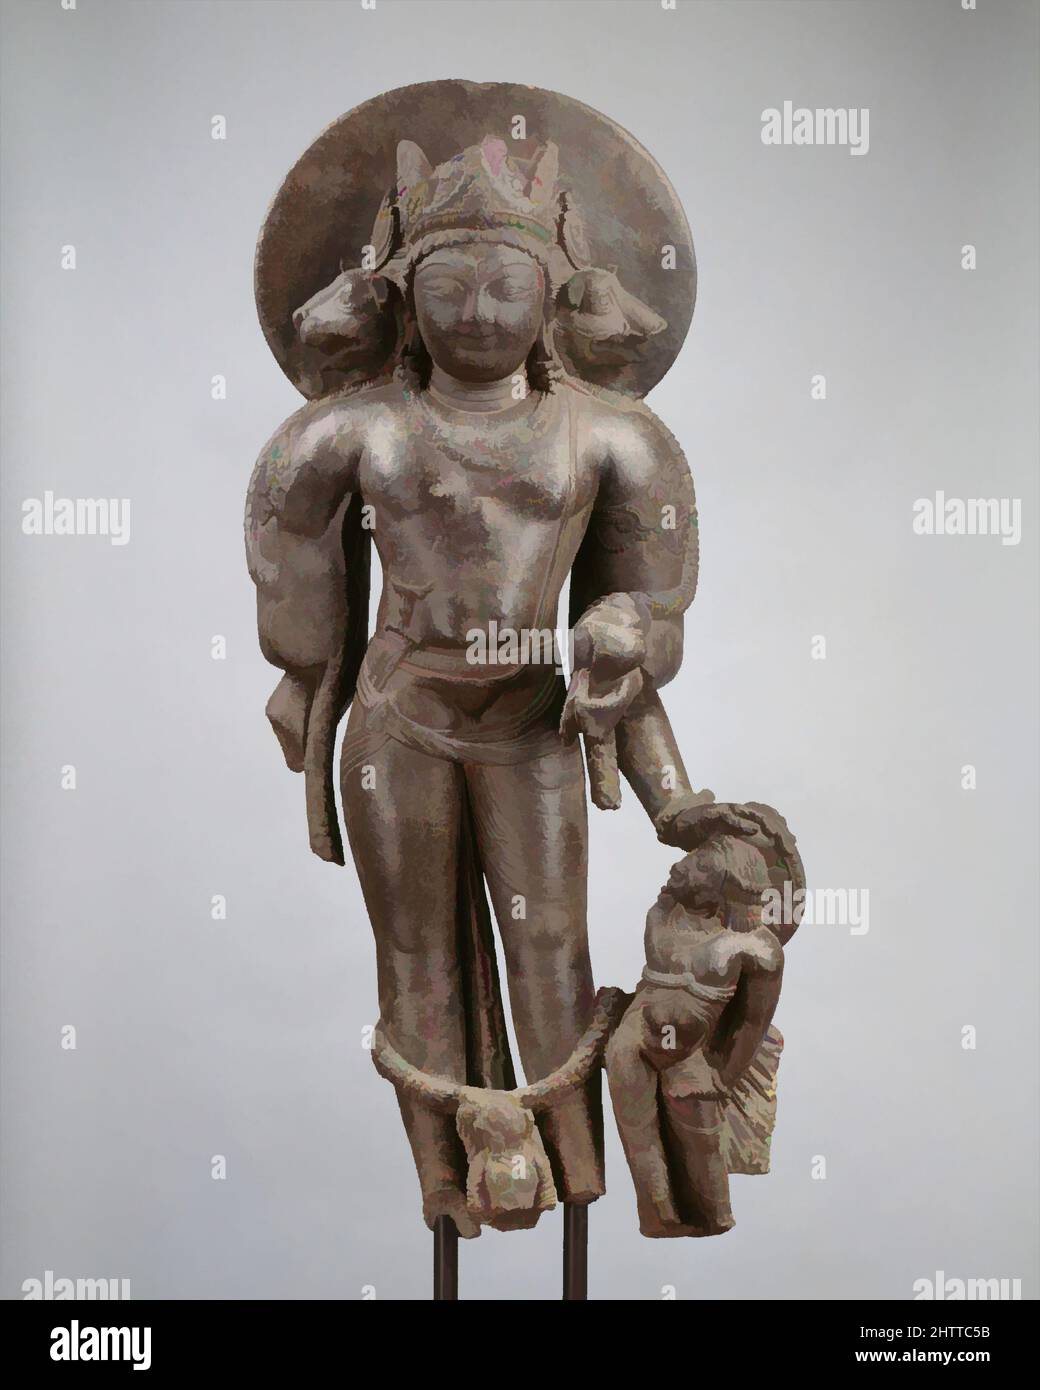 Art inspiré par Vaikuntha Vishnu, dernier quart du 8th siècle, Inde (Jammu & Cachemire, ancien royaume du Cachemire), Pierre, H. 41 1/8 in. (104,5 cm), Sculpture, cette forme complexe de Vishnu, d'abord mentionnée par le nom de Vaikuntha au VIIe siècle Vishnudharmottarapurana, est, oeuvres classiques modernisées par Artotop avec une touche de modernité. Formes, couleur et valeur, impact visuel accrocheur sur l'art émotions par la liberté d'œuvres d'art d'une manière contemporaine. Un message intemporel qui cherche une nouvelle direction créative. Artistes qui se tournent vers le support numérique et créent le NFT Artotop Banque D'Images